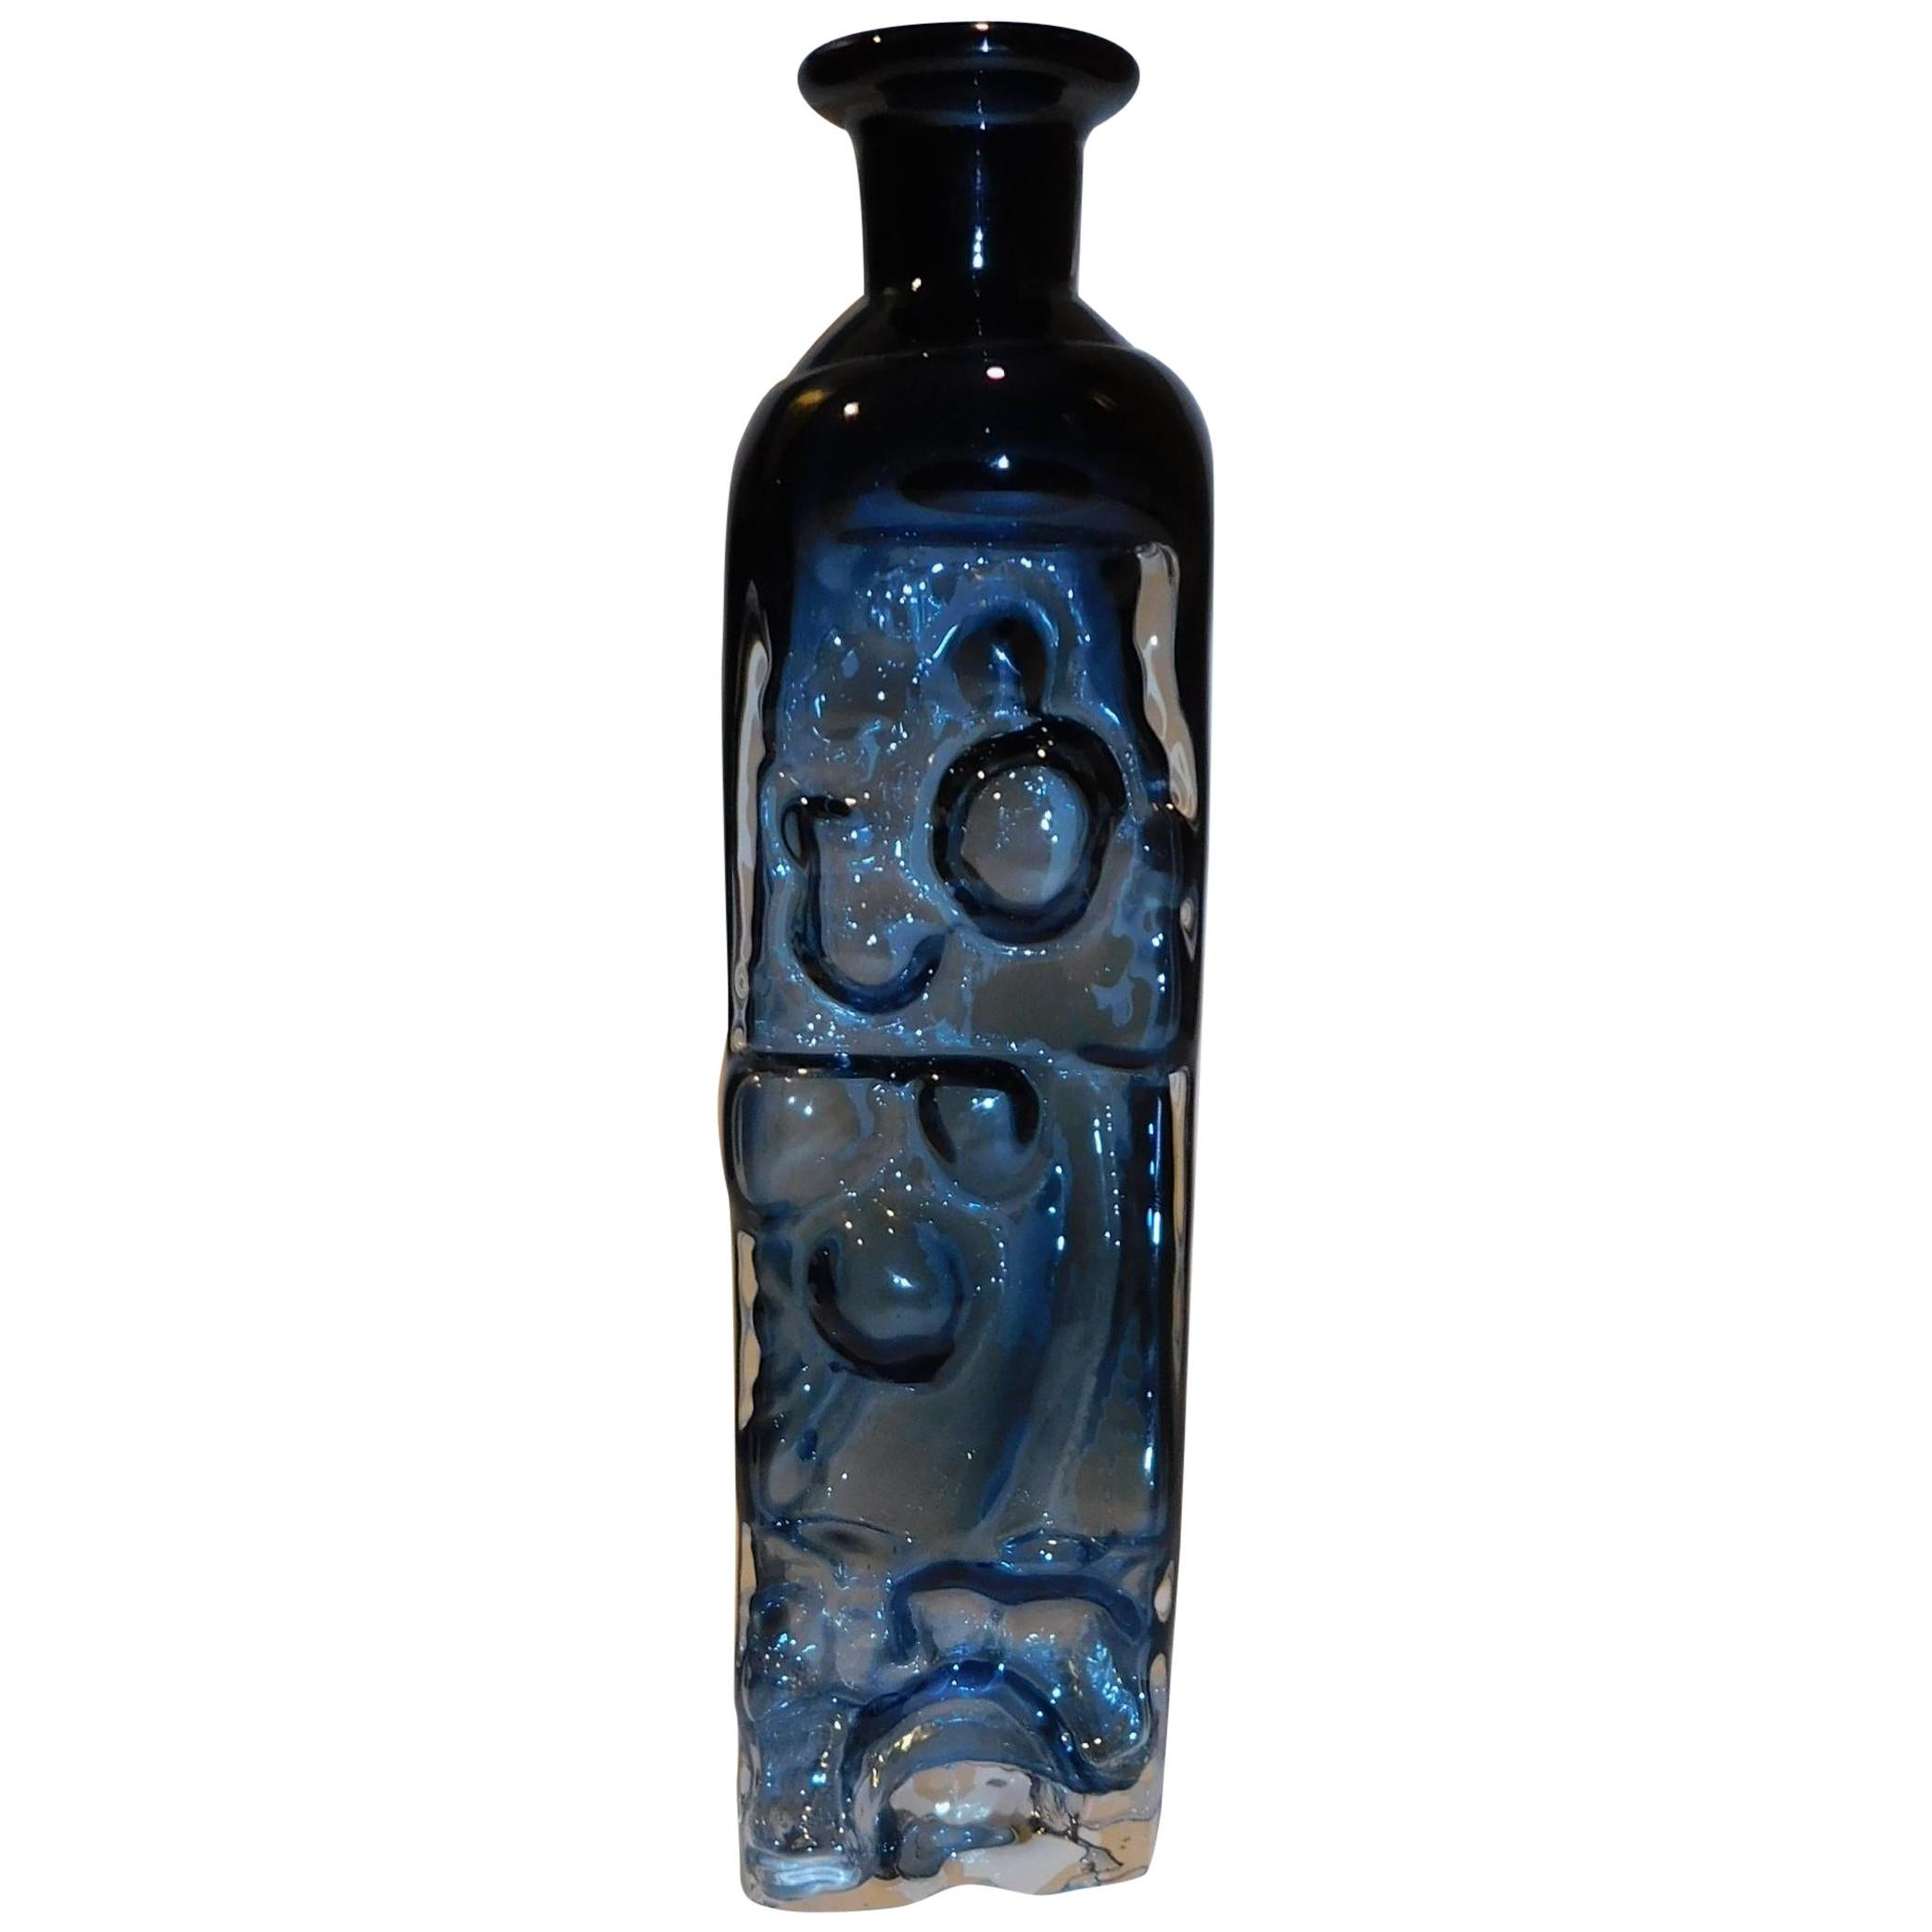 Lars Hellsten Orrefors Glass Vase in Smoky Blue-Grey, 1979 For Sale